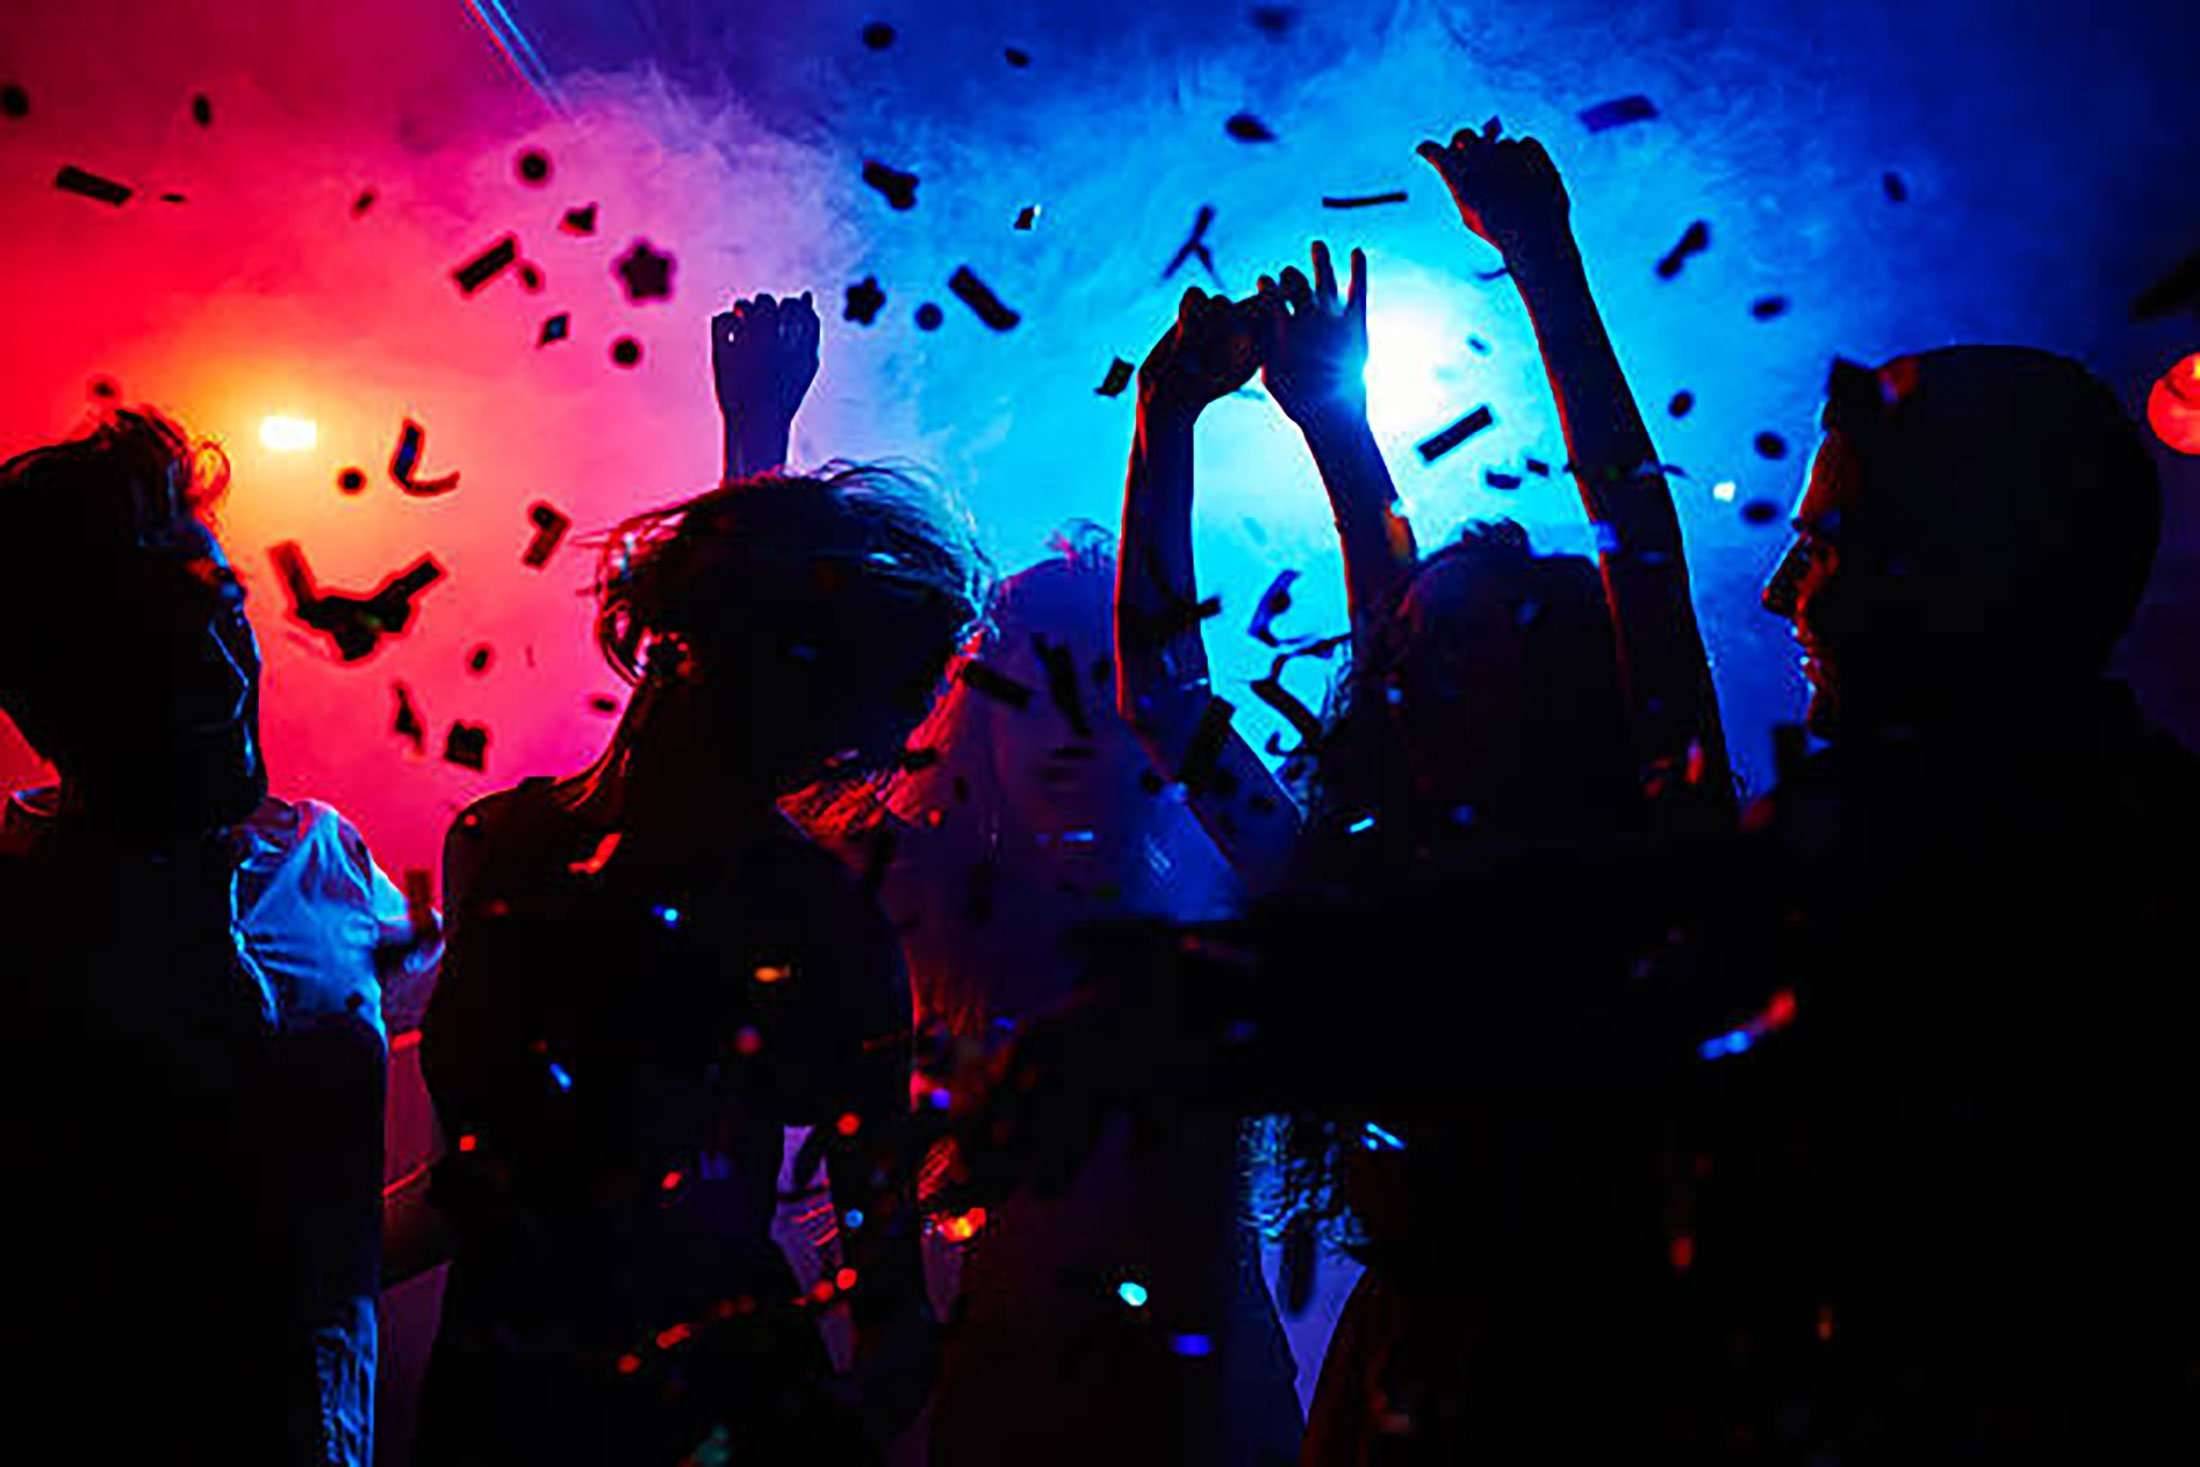 Dance party 5. Дискотека Эстетика. Вечеринка. Вечеринка Эстетика. Люди танцуют в ночном клубе.